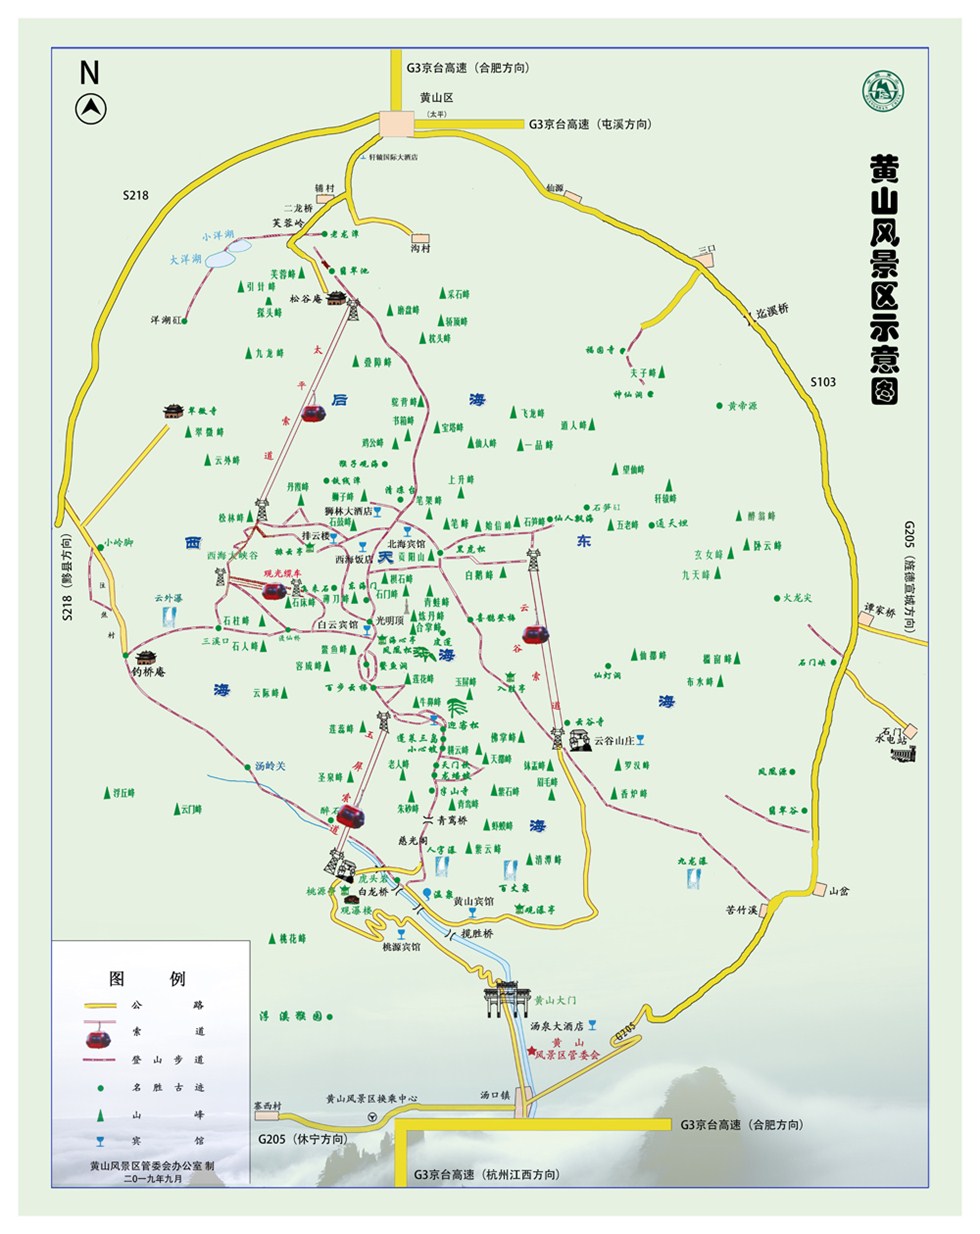 黄山区旅游地图和黄山风景区旅游导览示意图